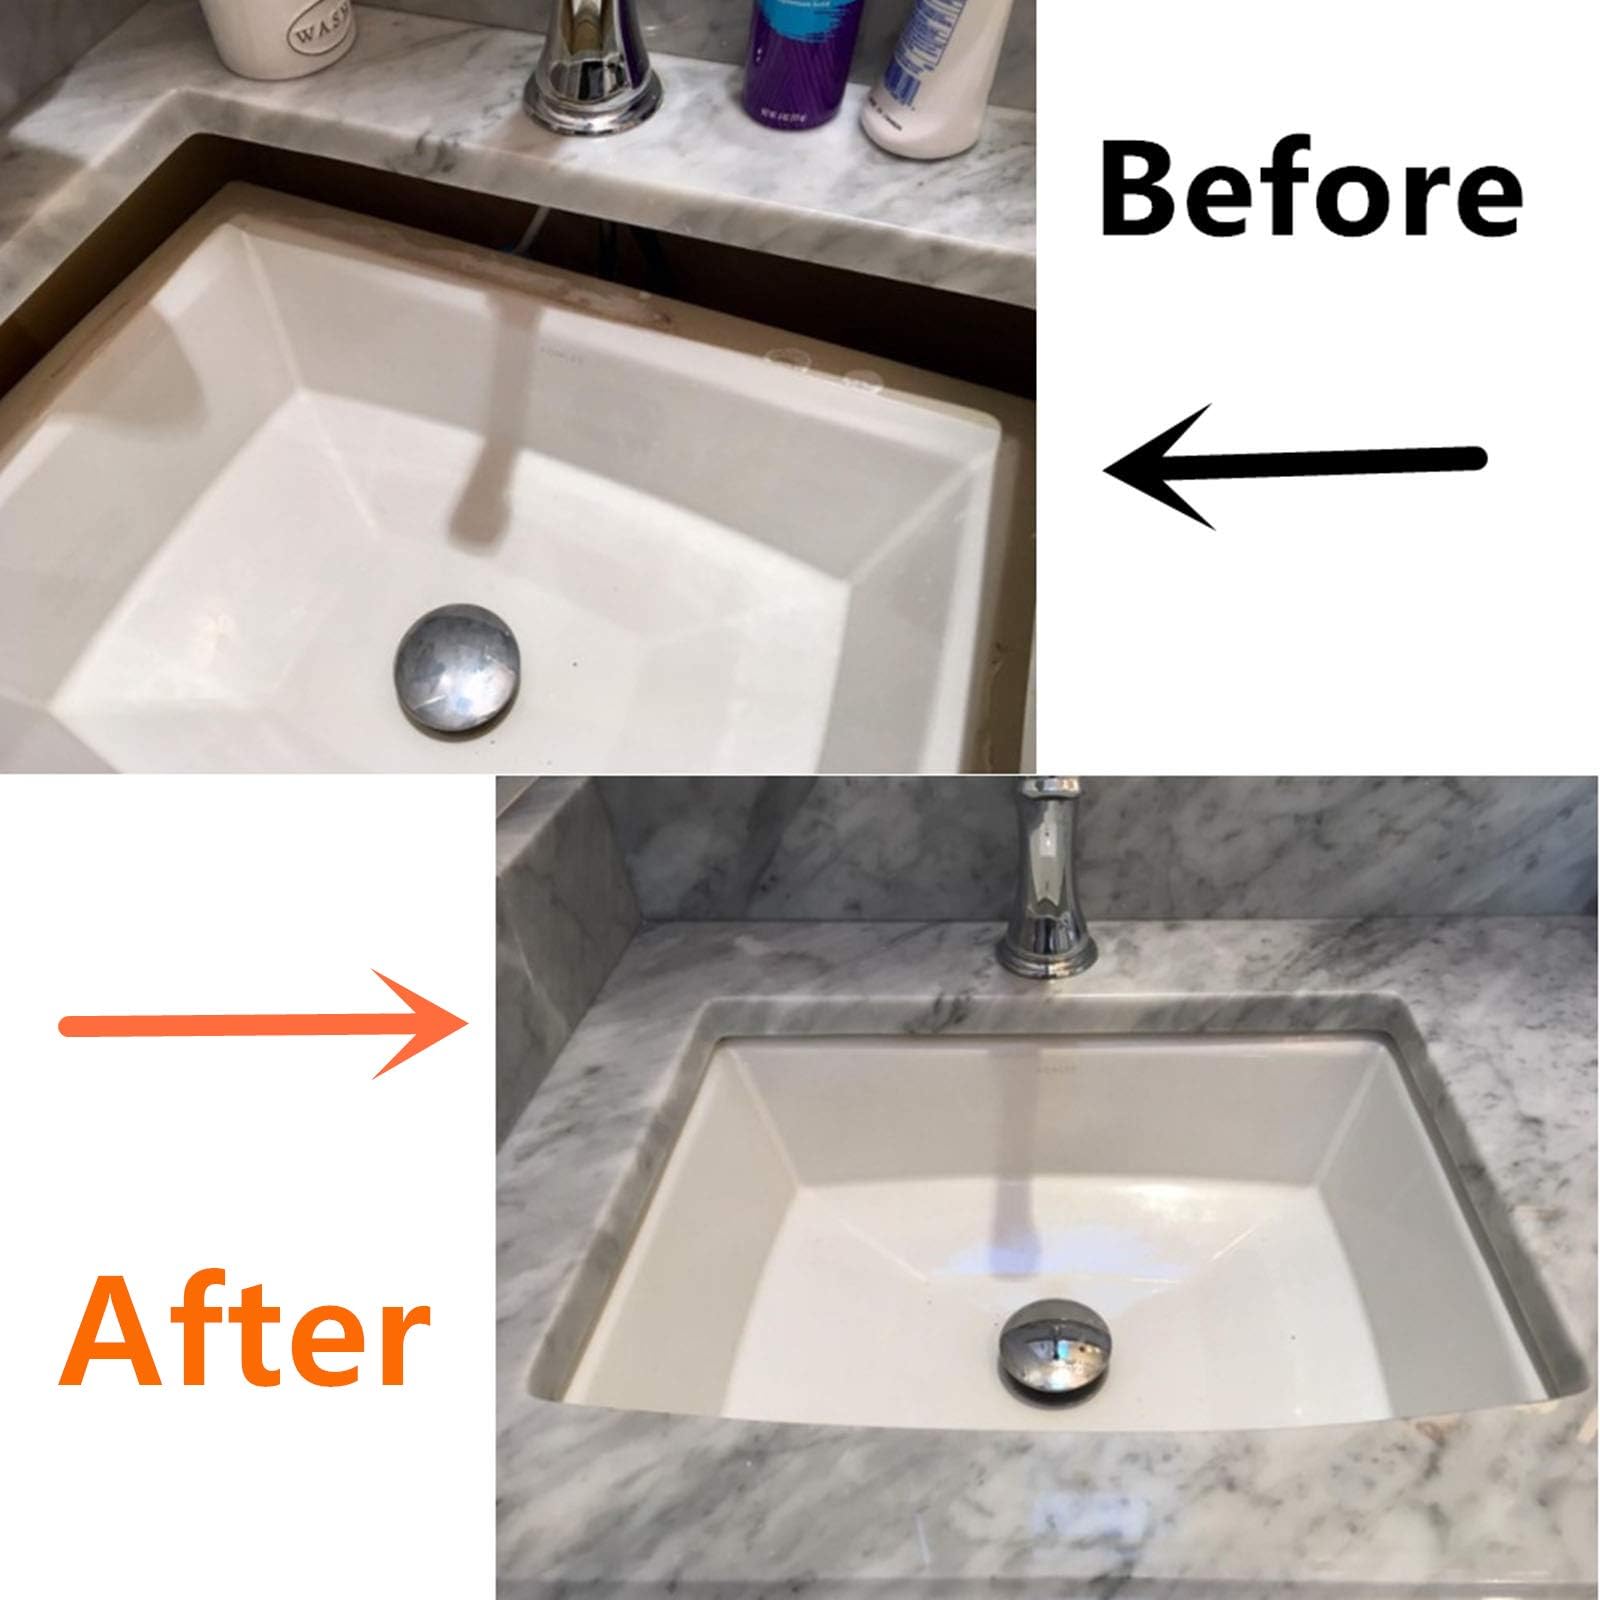 Undermount sink brackets,Undermount sink repair kit, Best undermount sink support,Undermount kitchen sink brackets for fallen sink support.(Patent)